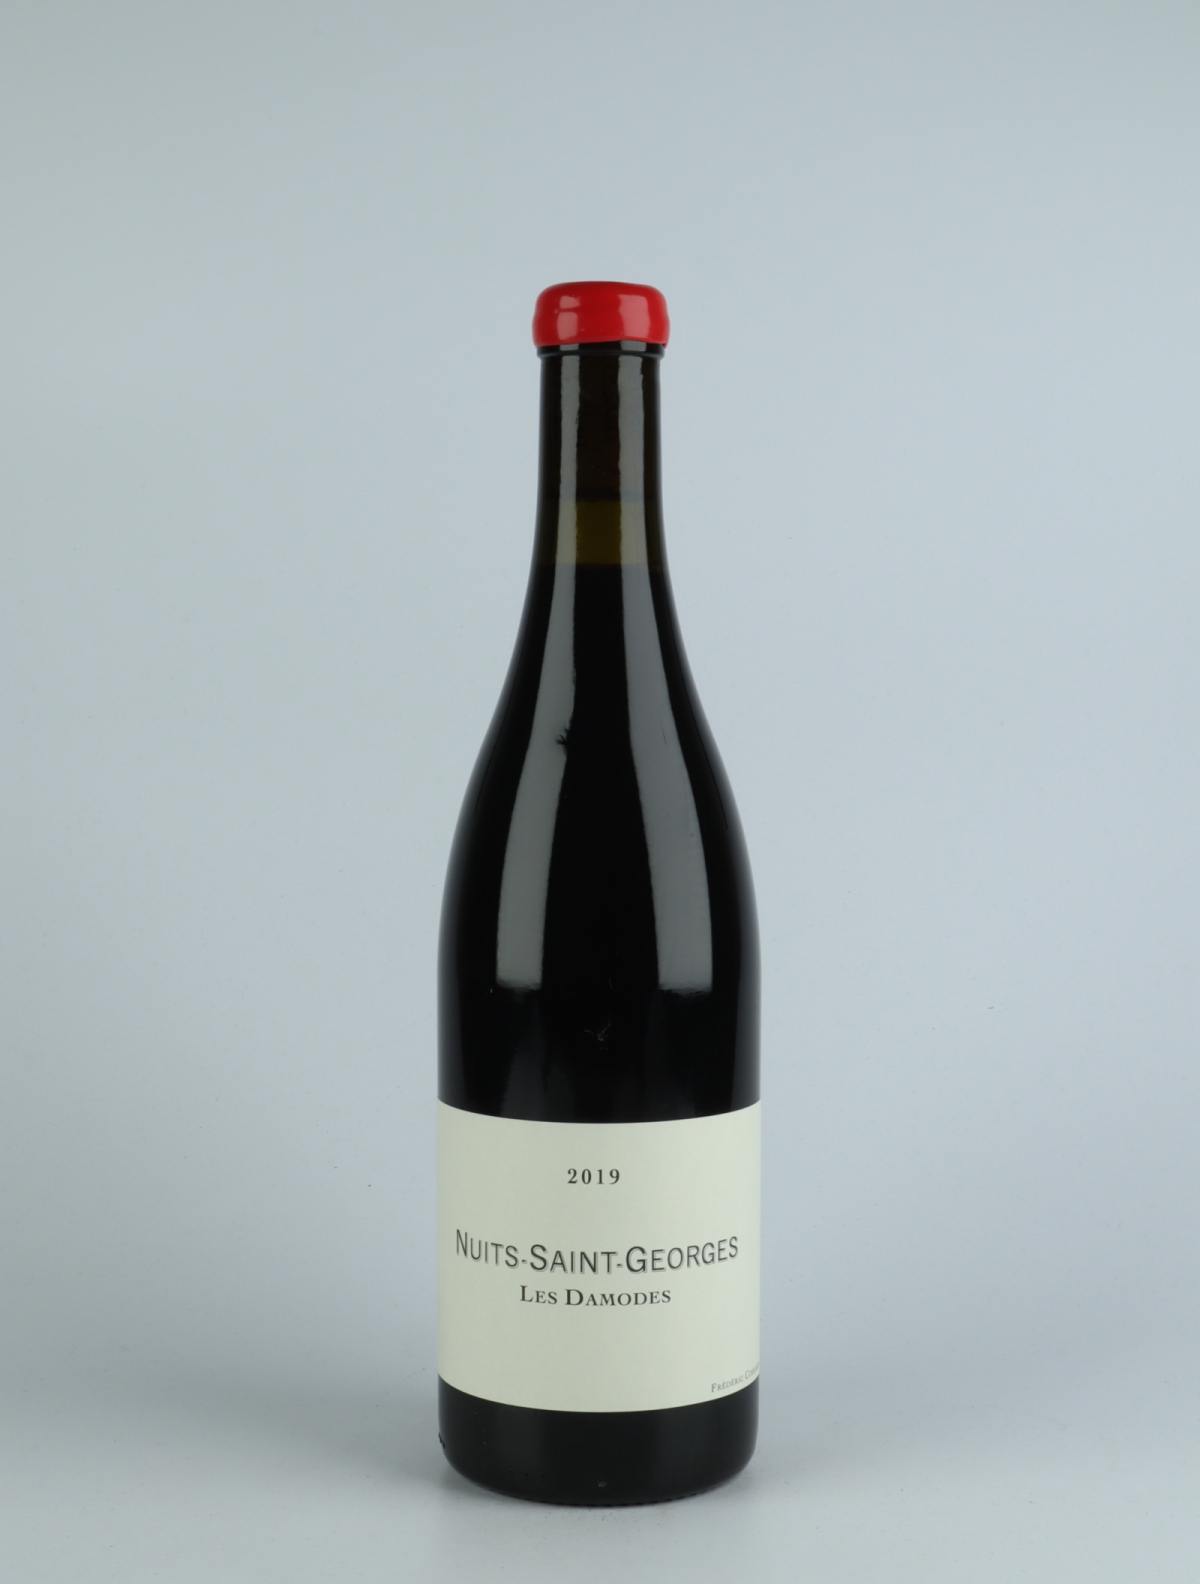 En flaske 2019 Nuits Saint Georges - Damodes Rødvin fra Frédéric Cossard, Bourgogne i Frankrig